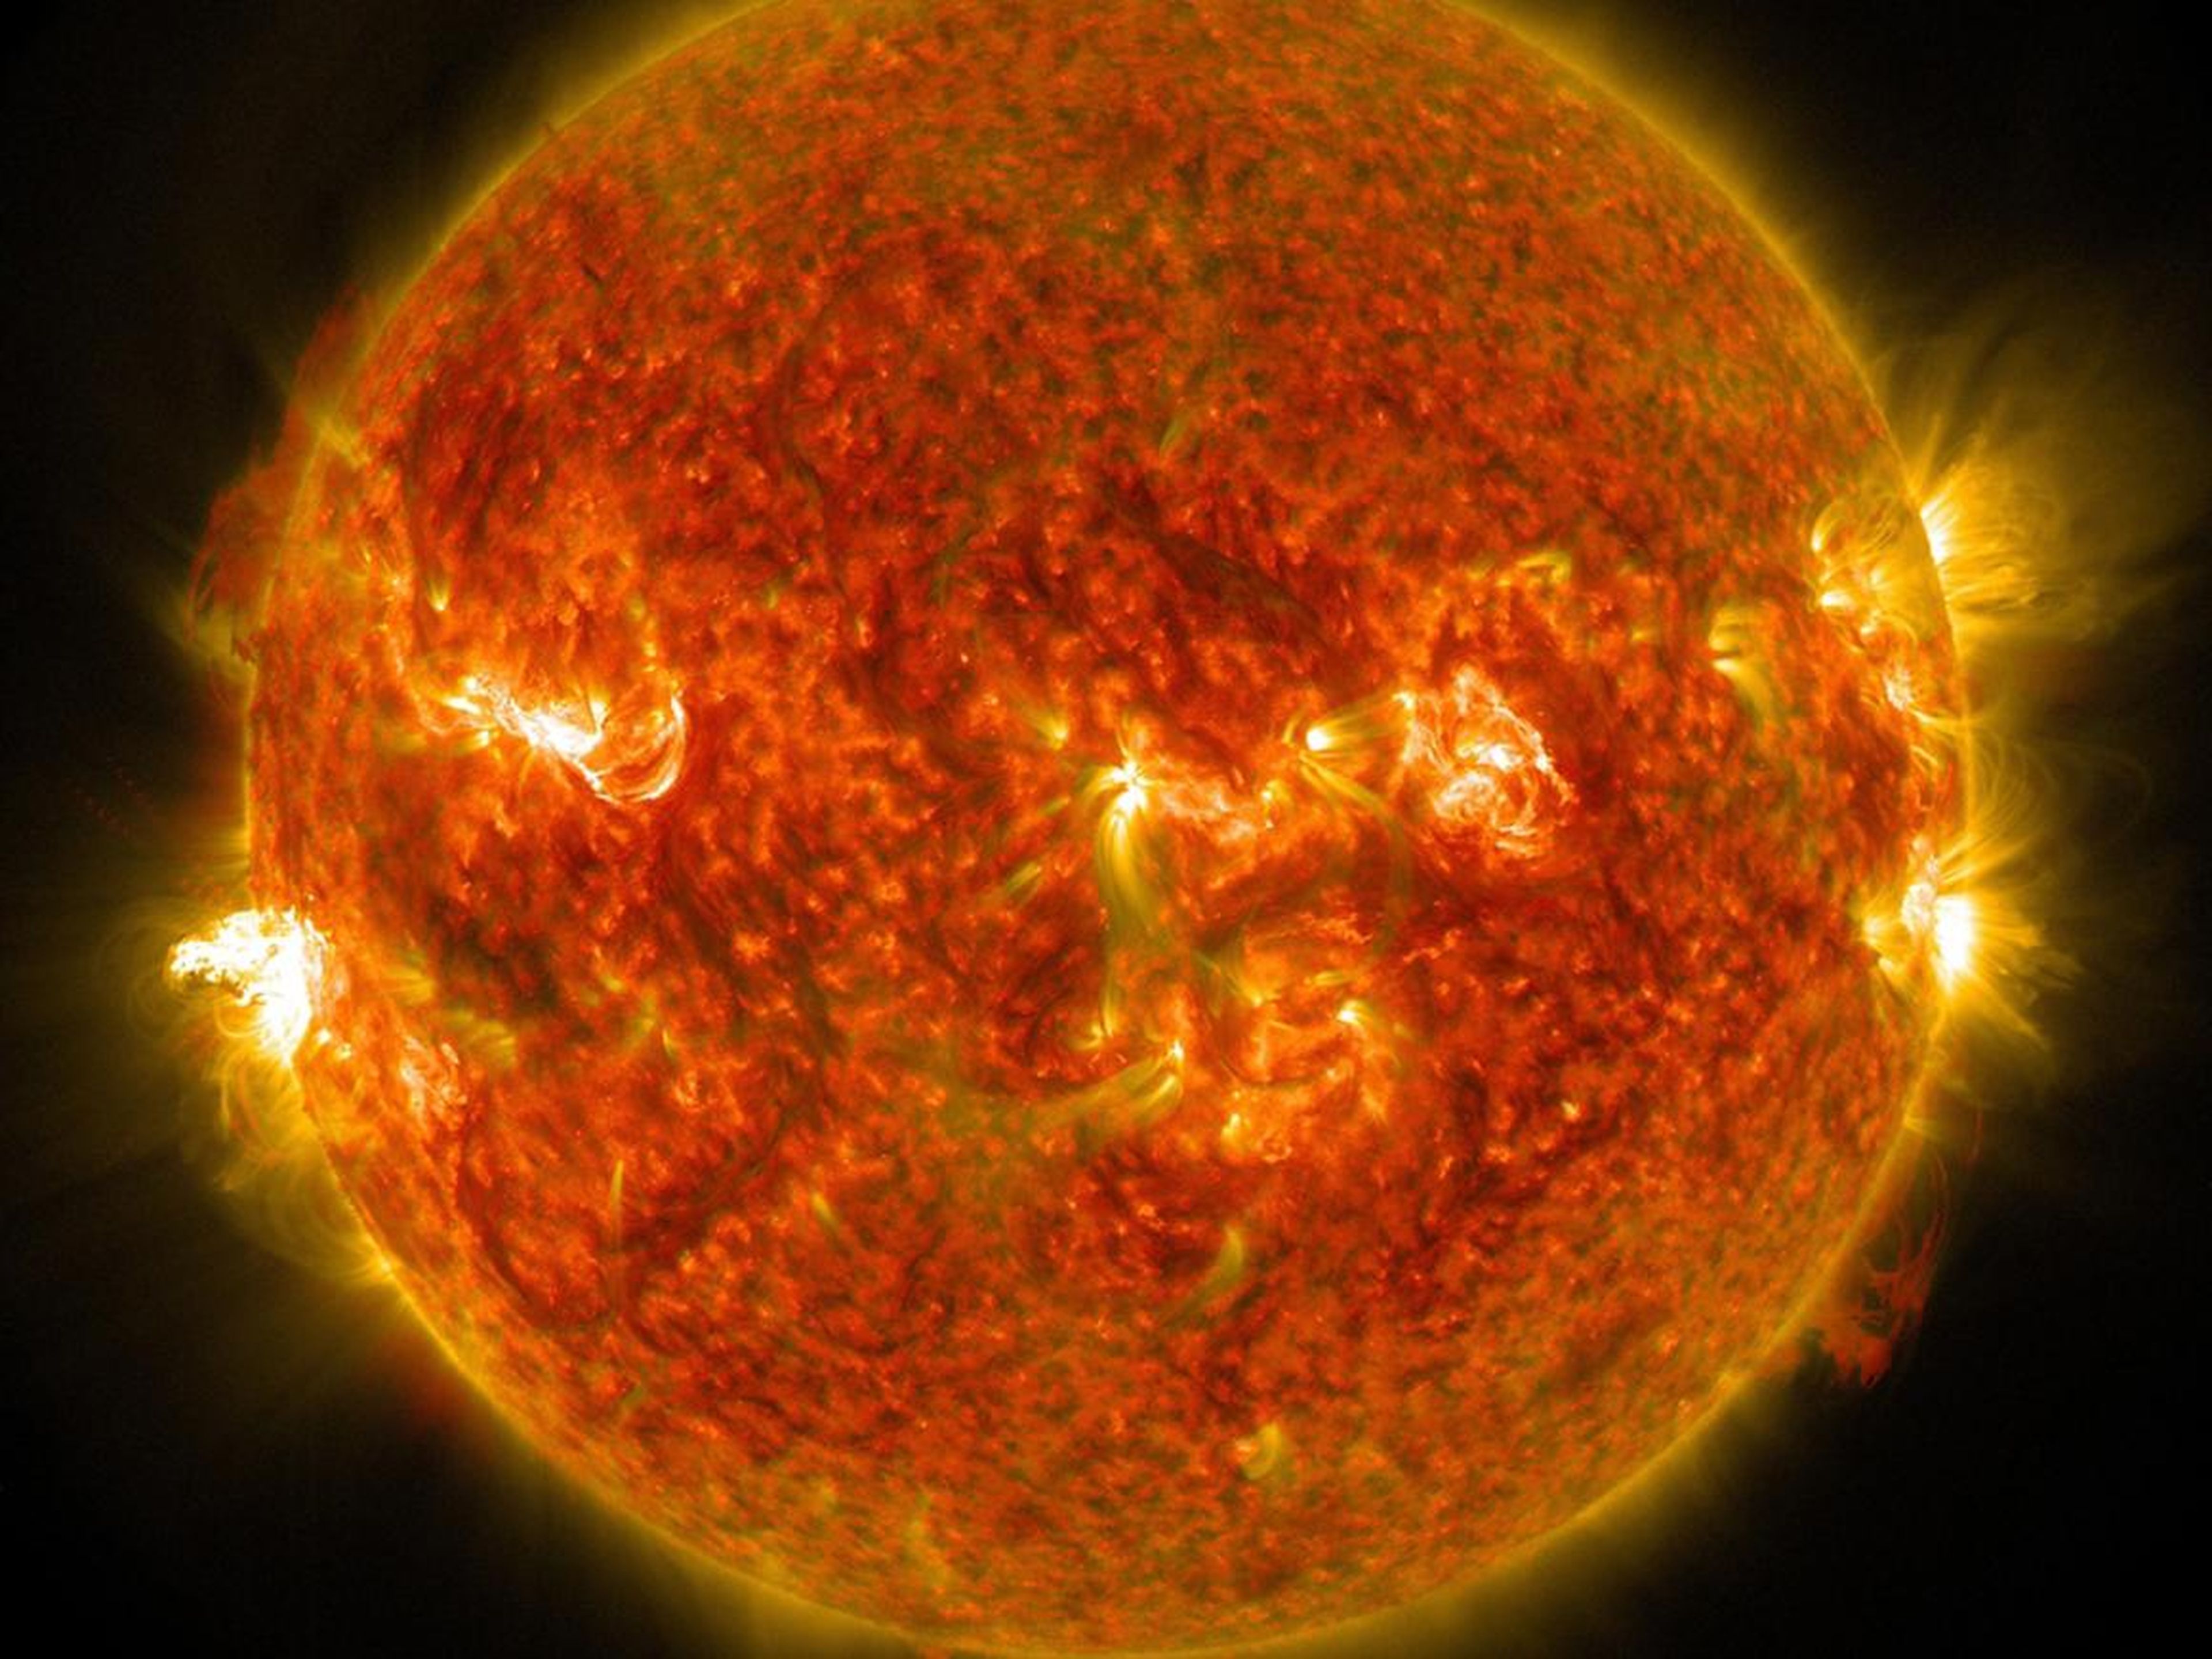 Una imagen de la NASA de una erupción solar desde el lado izquierdo del sol.